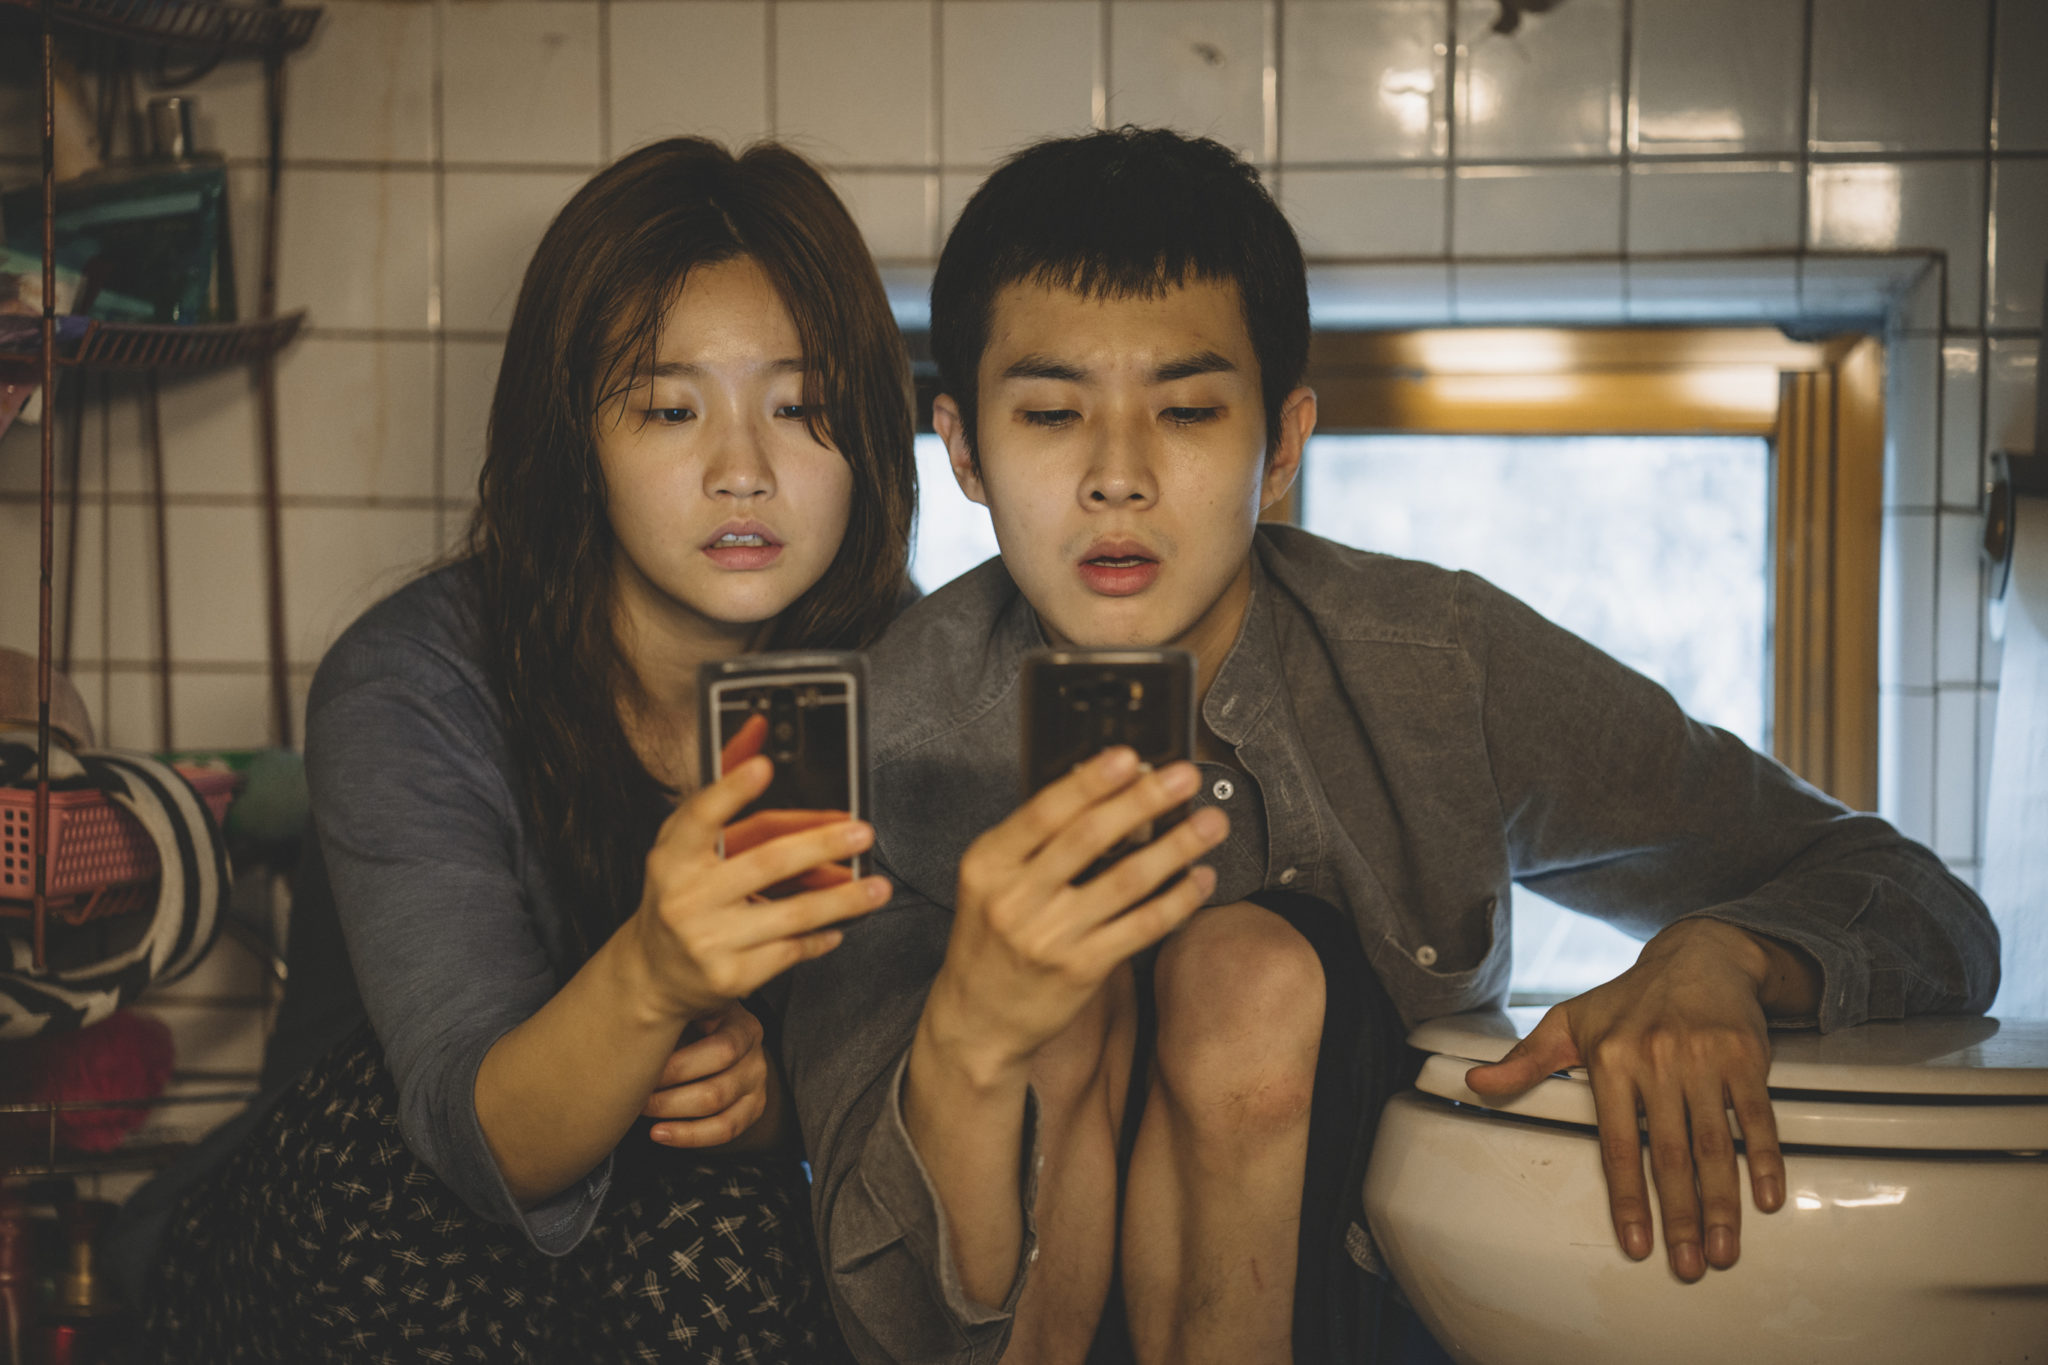 Der WLAN-Empfang ist auf der Toilette am Besten, wie praktisch … (Woo-sik Choi und So-dam Park, Foto: Koch Media)